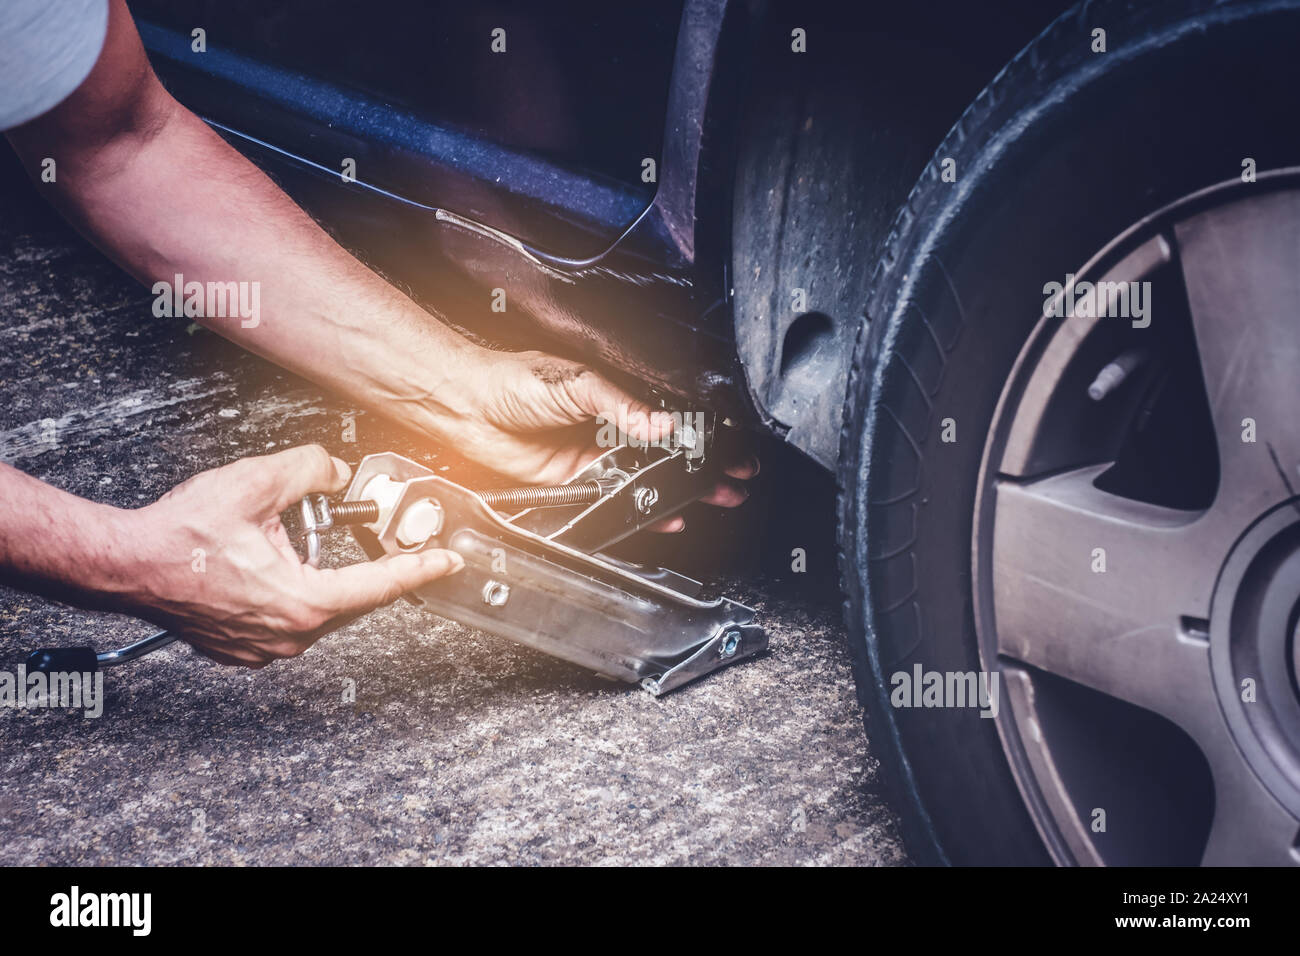 Mann anheben Auto mit Jack Schraube für Reifenwechsel der Reifenpanne Rad - Reifenwechsel oncept Stockfoto